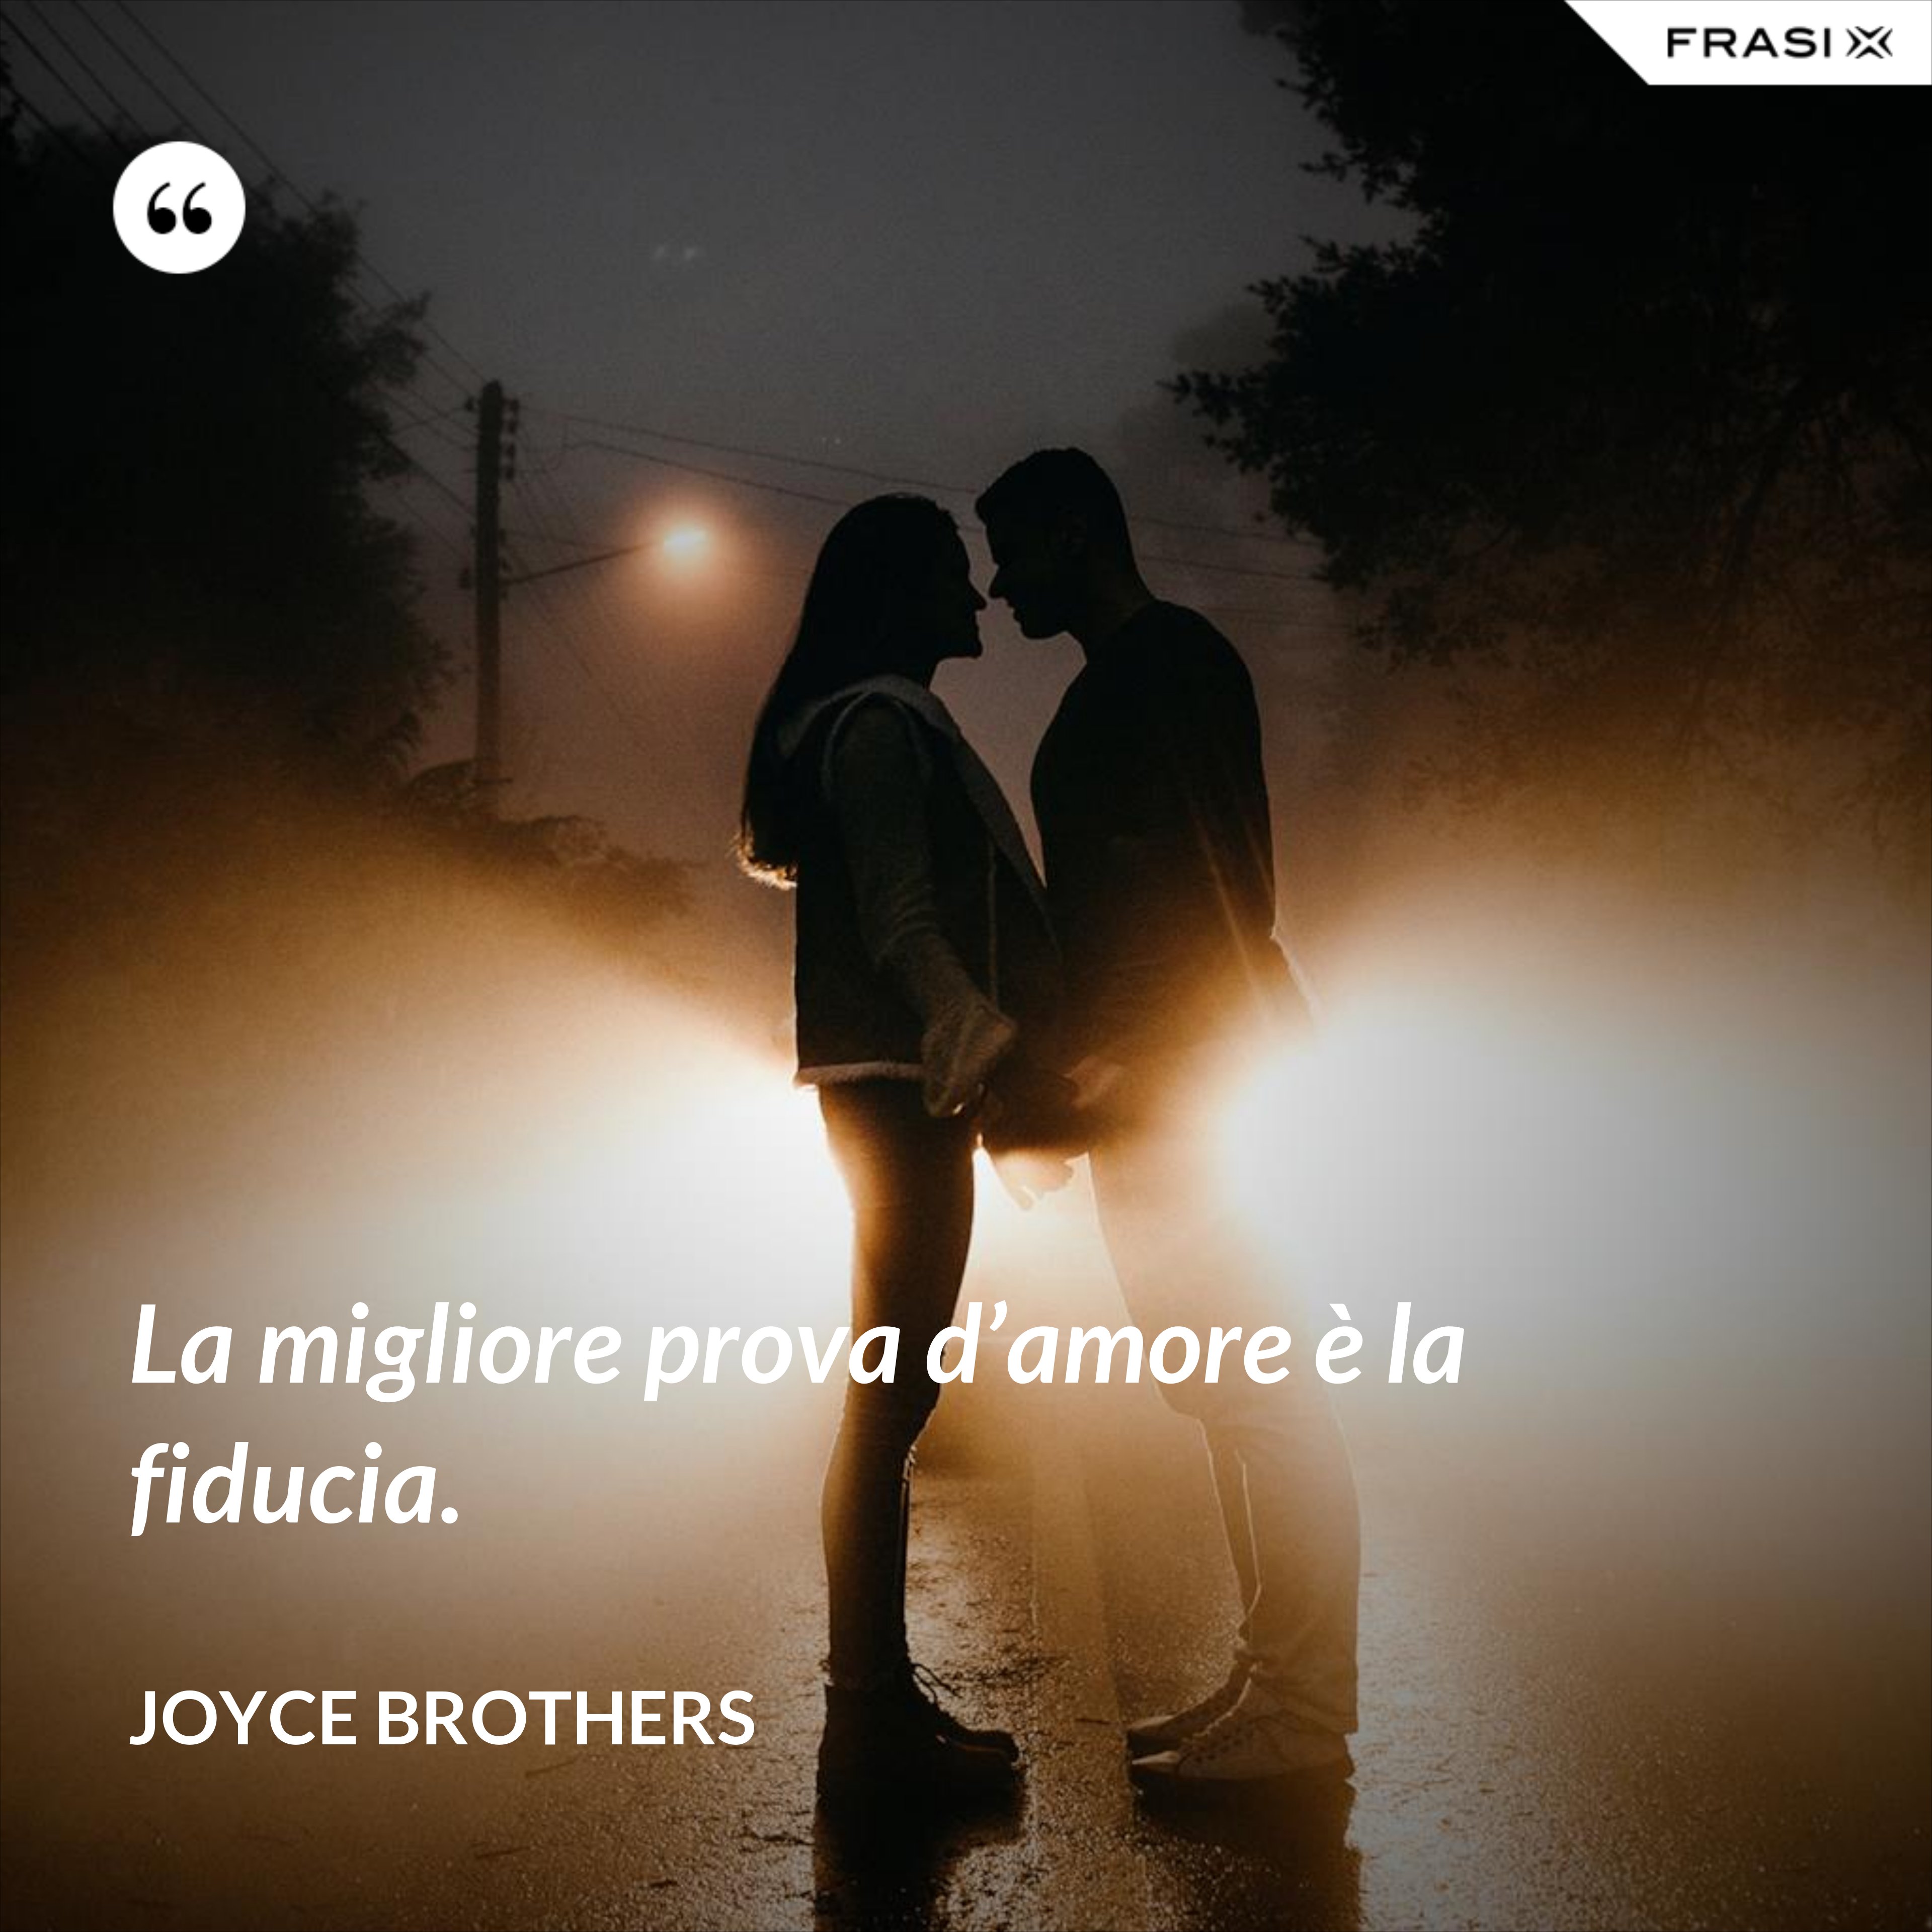 La migliore prova d’amore è la fiducia. - Joyce Brothers